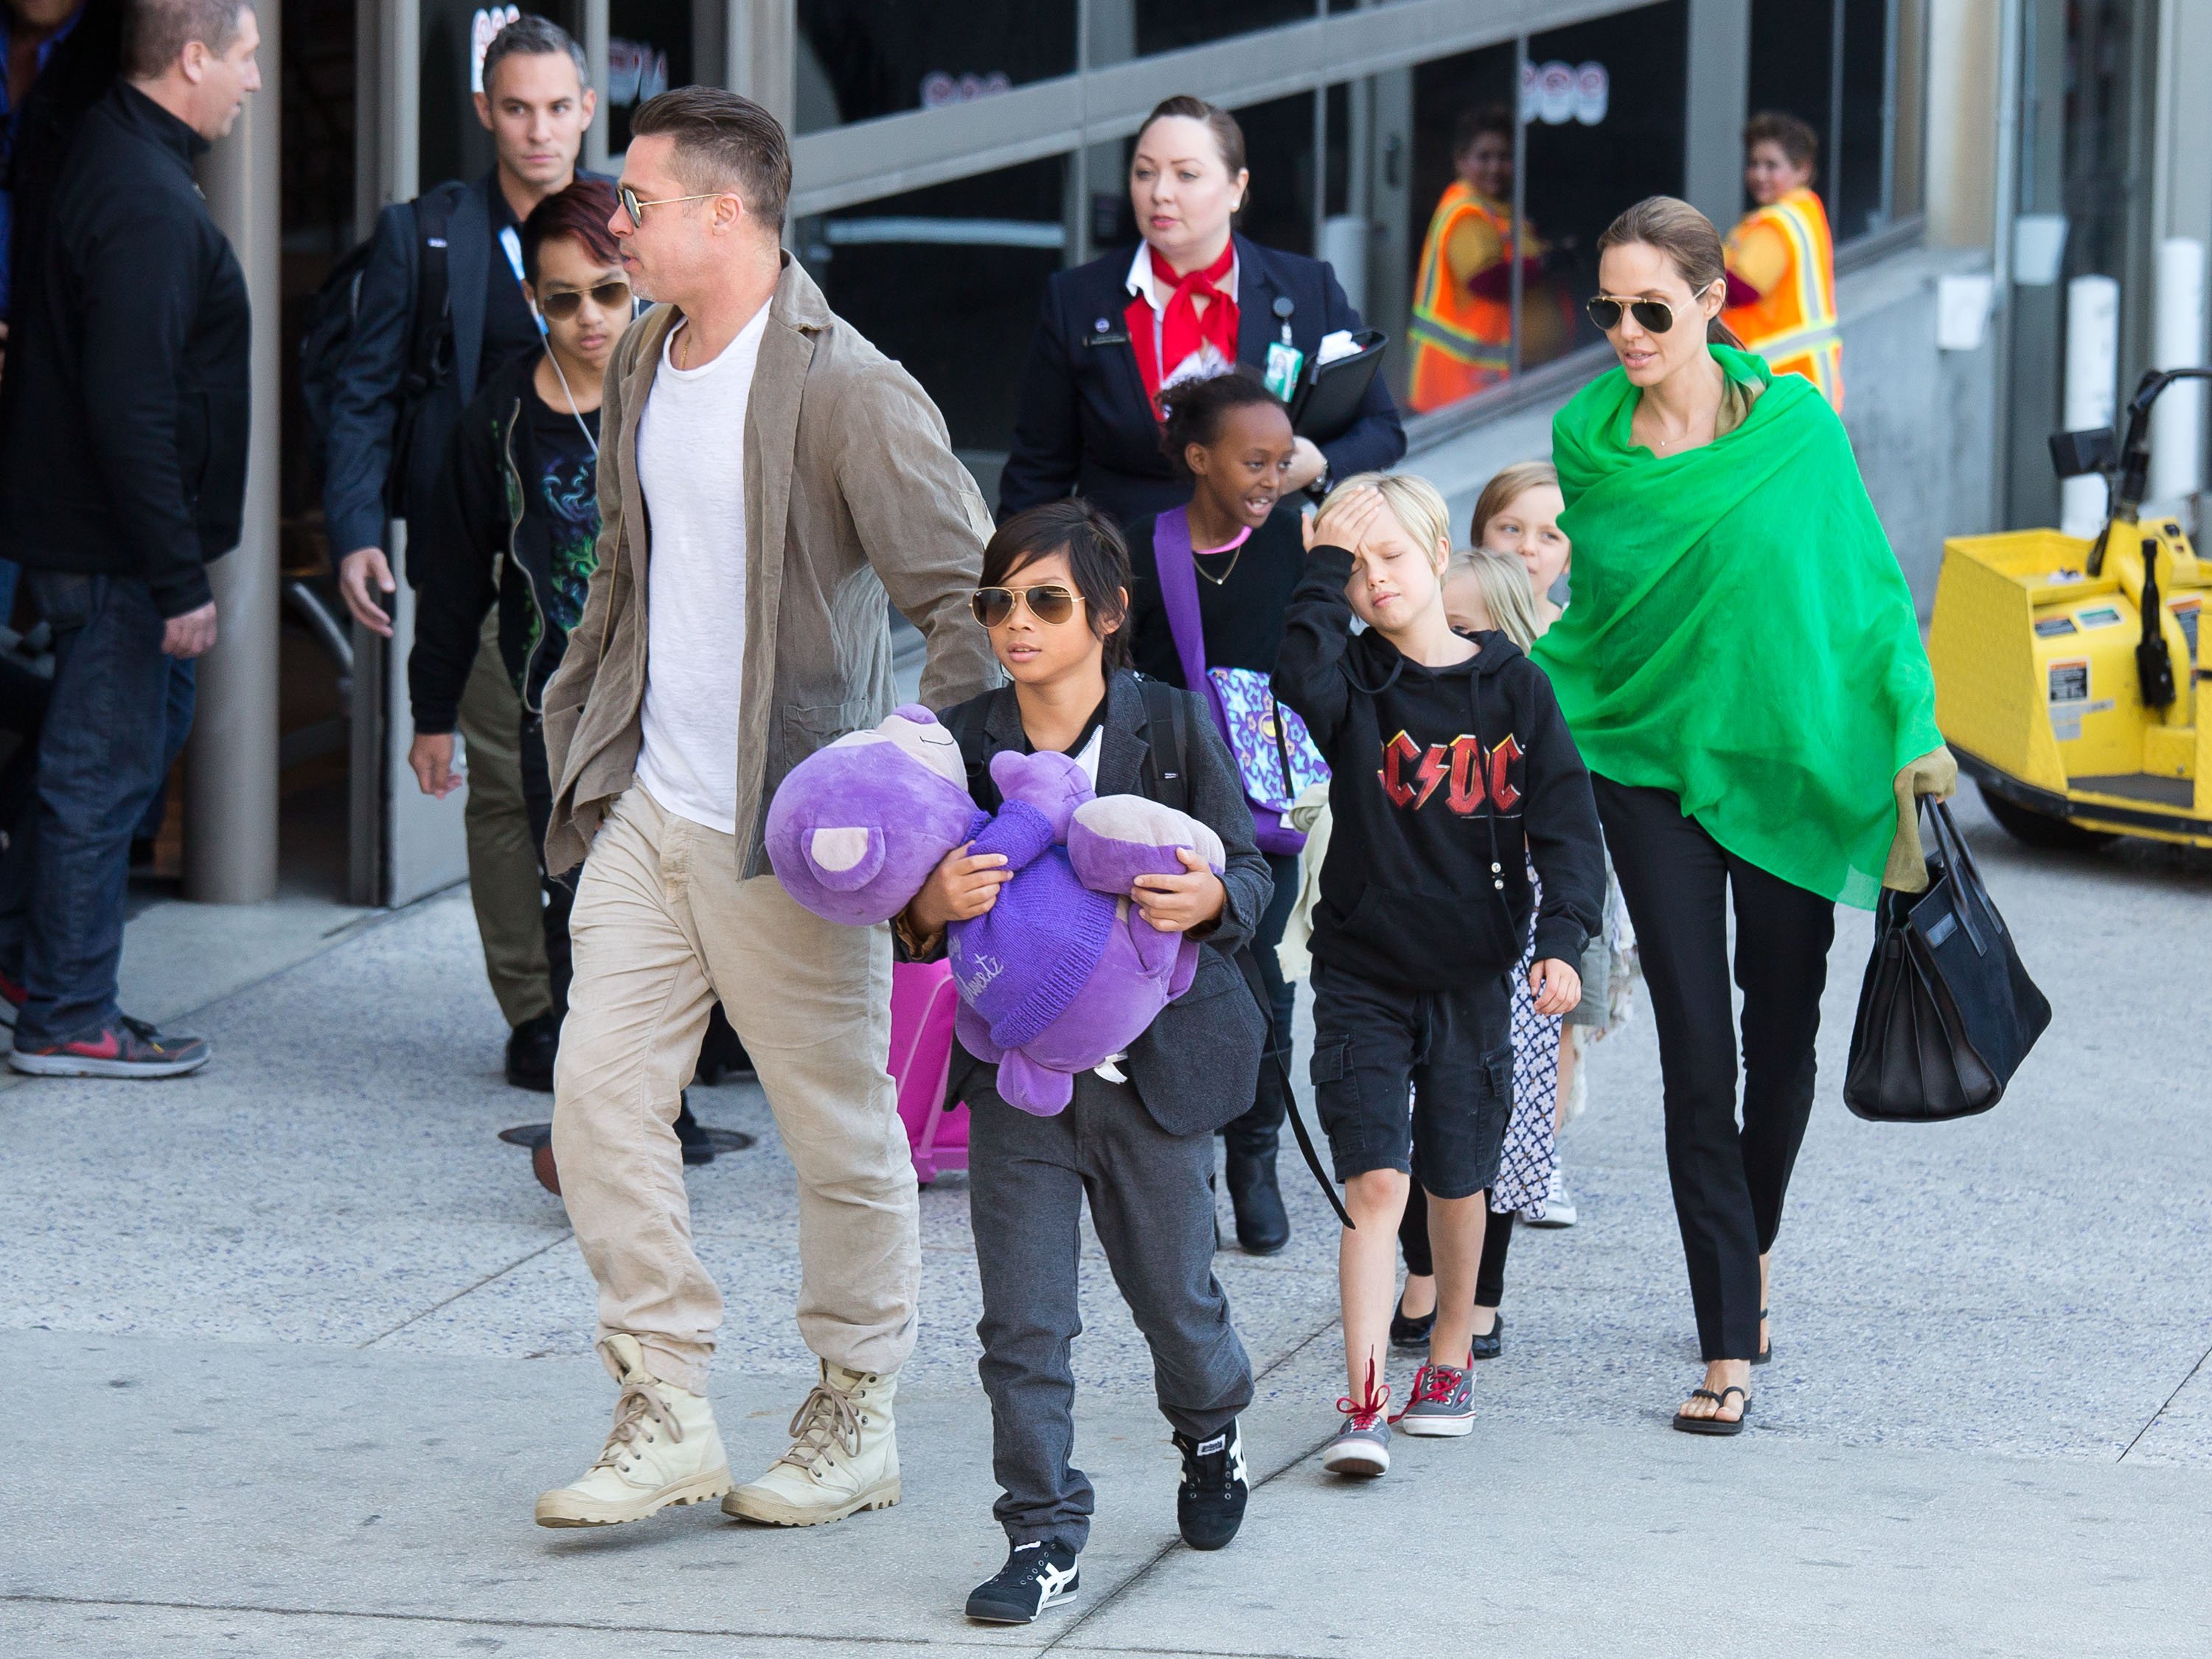 Brad Pitt und Angelina Jolie nach der Landung am Los Angeles International Airport mit ihren Kindern Pax, Maddox, Shiloh, Zahara, Vivienne und Knox Jolie-Pitt am 5. Februar 2014 in Kalifornien | Quelle: Getty Images